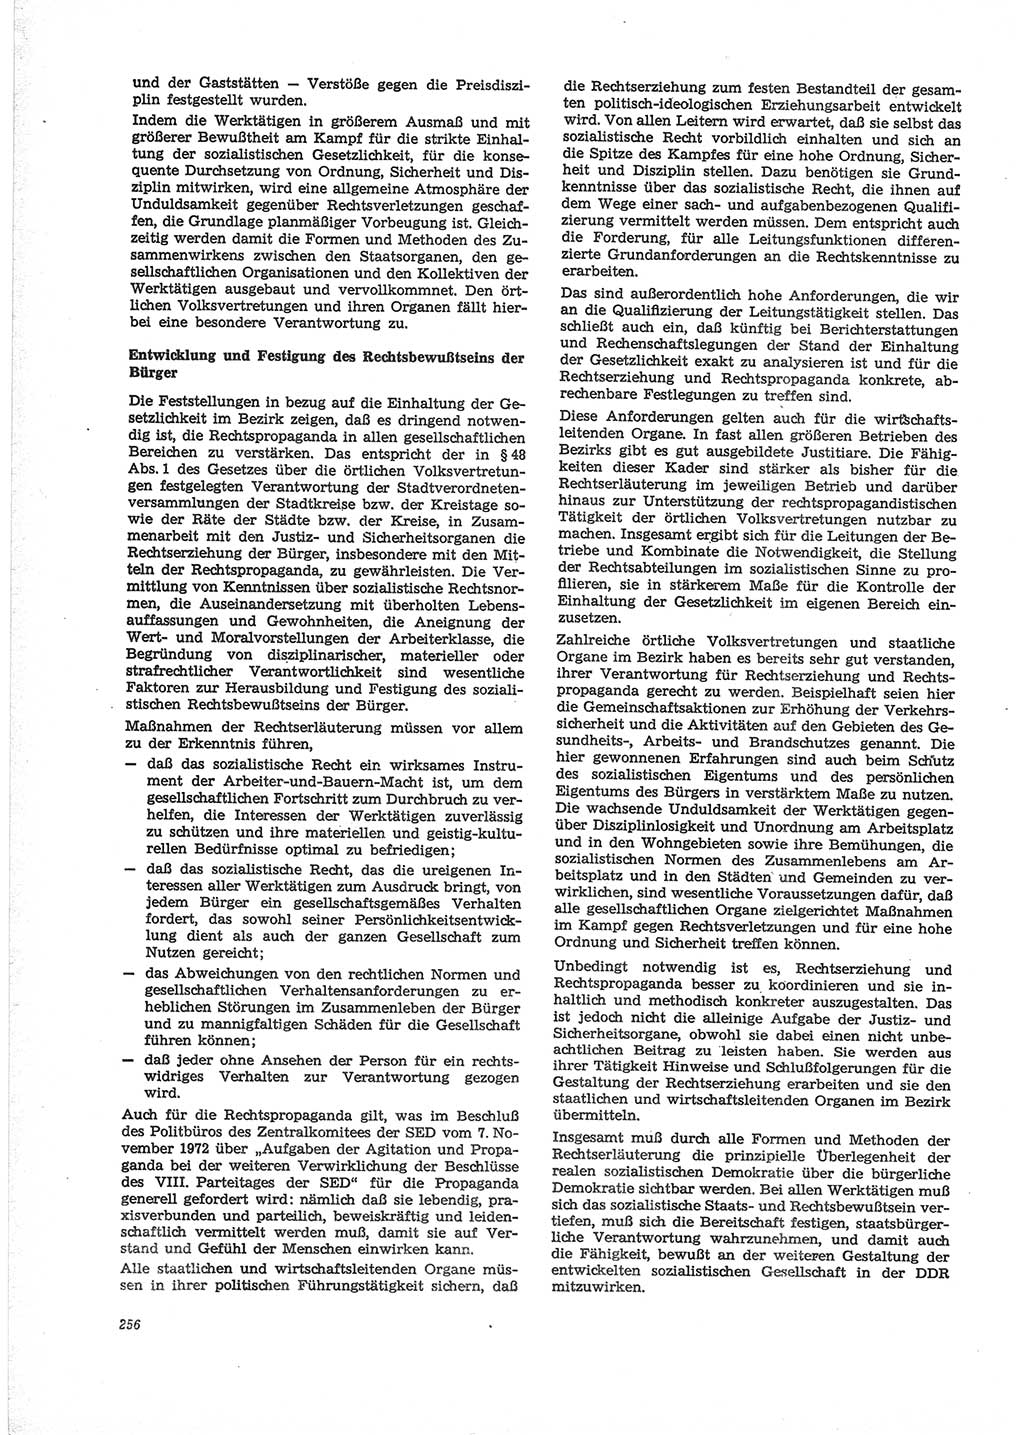 Neue Justiz (NJ), Zeitschrift für Recht und Rechtswissenschaft [Deutsche Demokratische Republik (DDR)], 28. Jahrgang 1974, Seite 256 (NJ DDR 1974, S. 256)